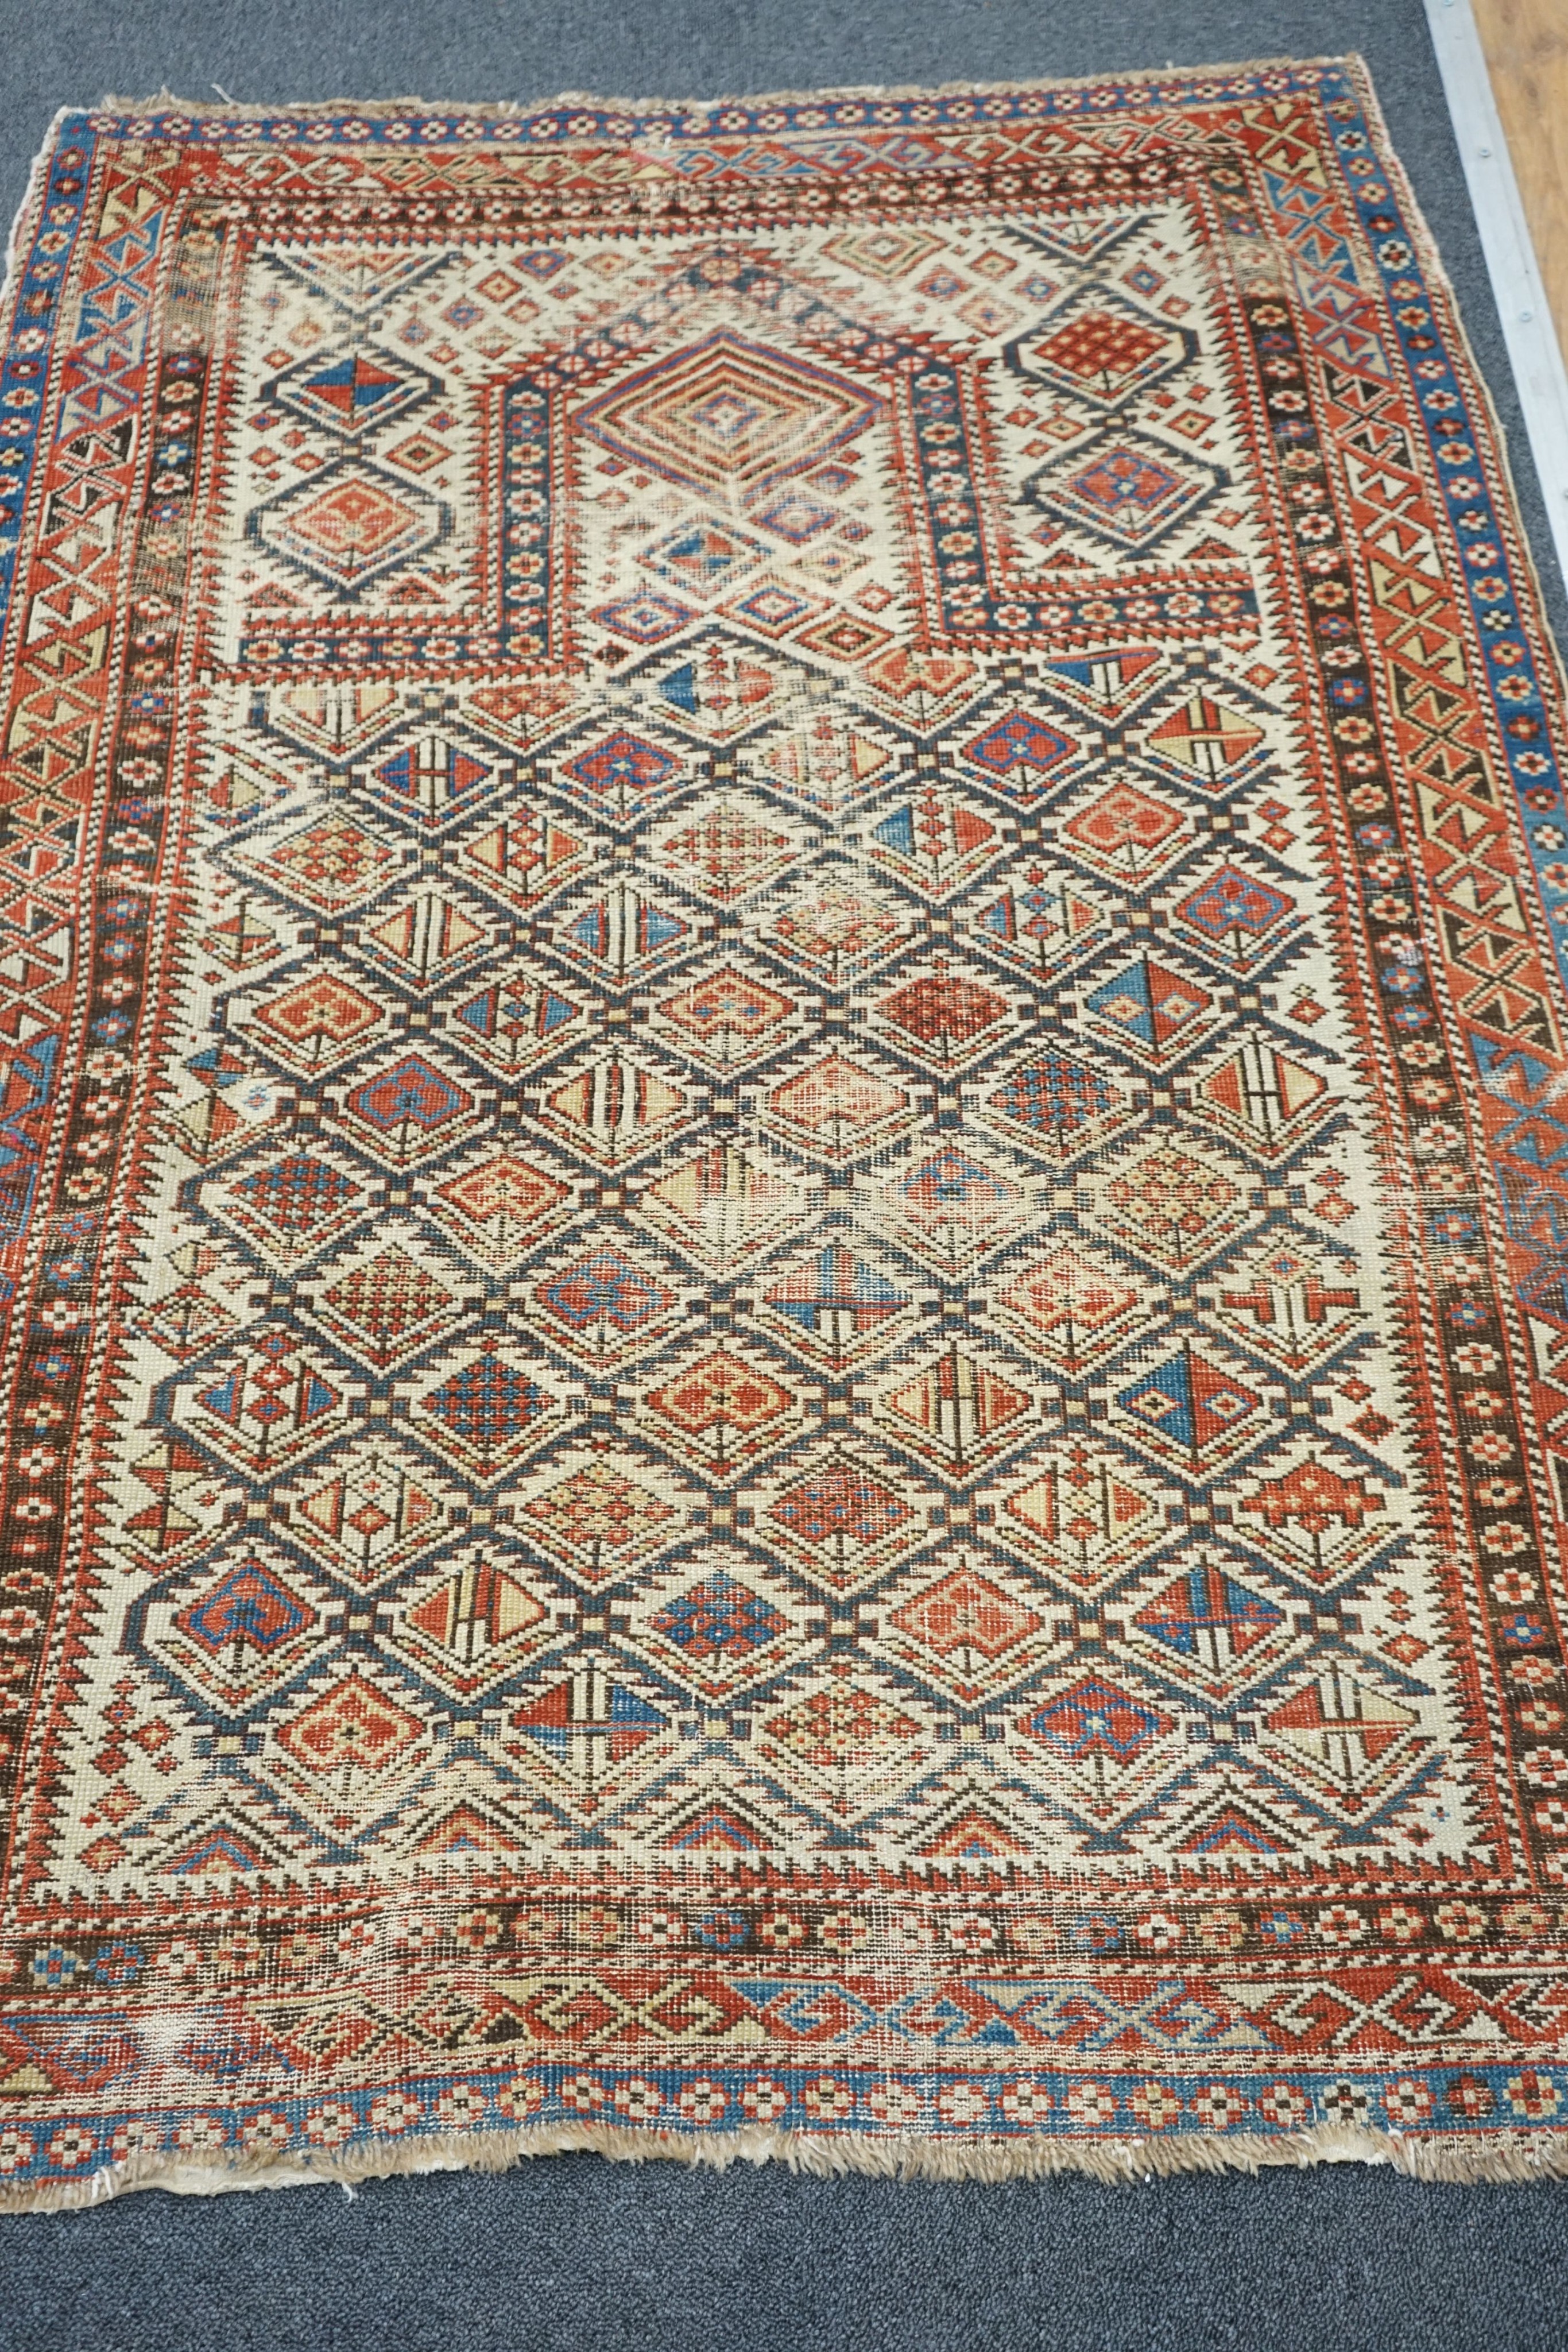 An antique Daghestan prayer rug, 144 x 101cm